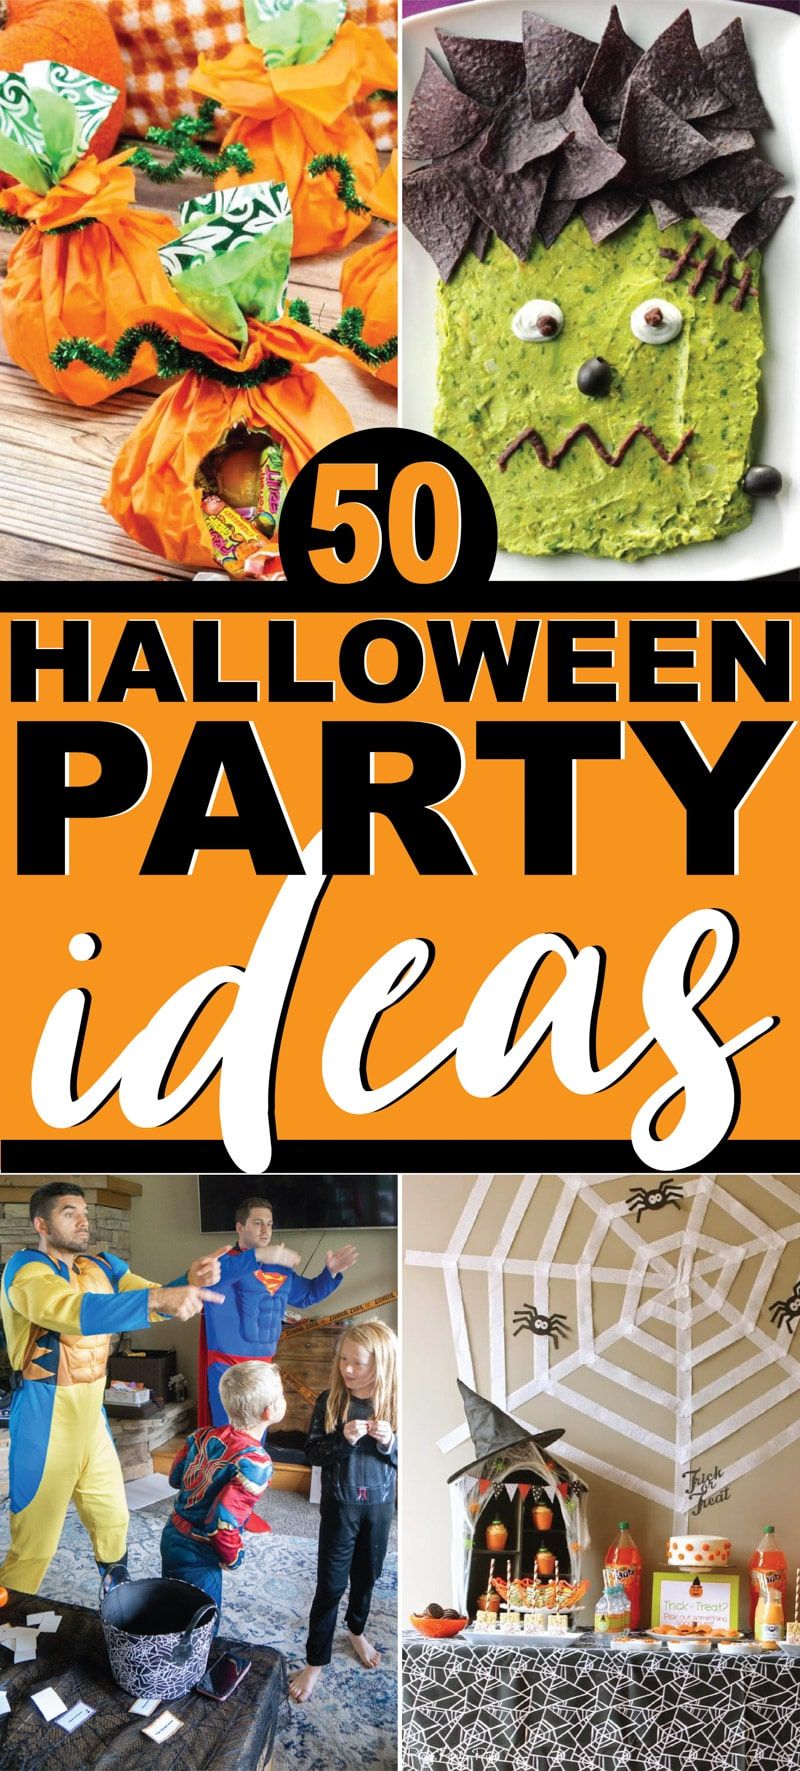 Nejlepší kolekce nápadů na halloweenskou párty pro všechny věkové kategorie - dospělé, děti i dospívající!